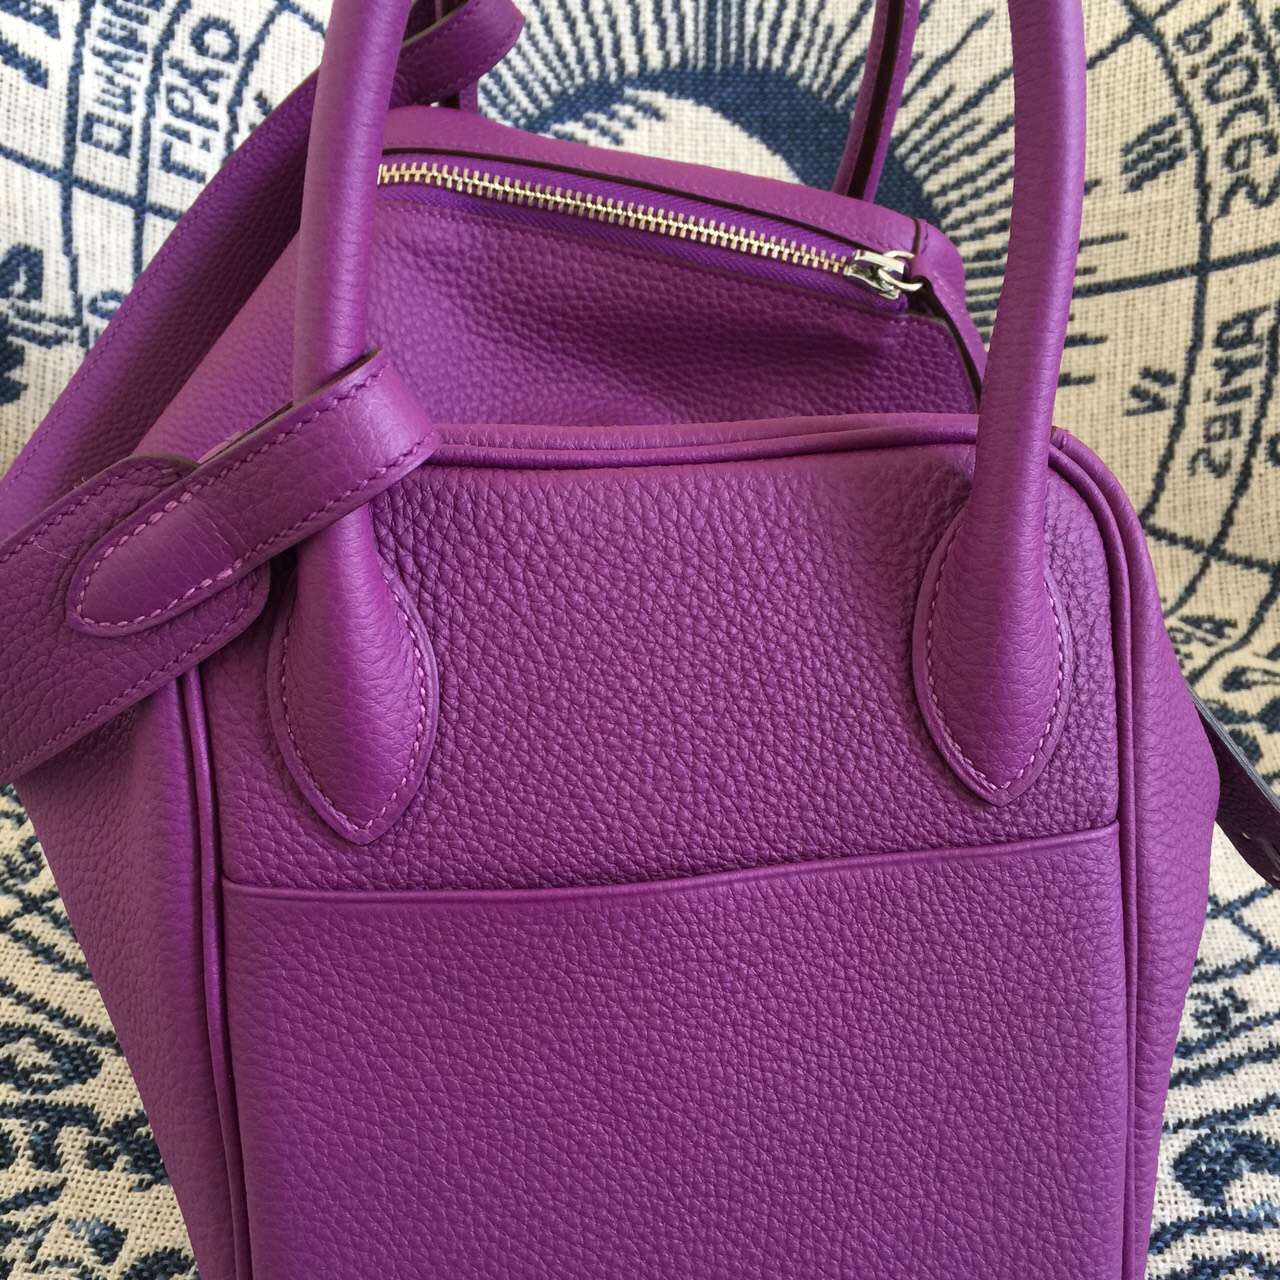 New Hermes Bag P9 Anemone Purple Original Togo Calfskin Lindy Bag30cm